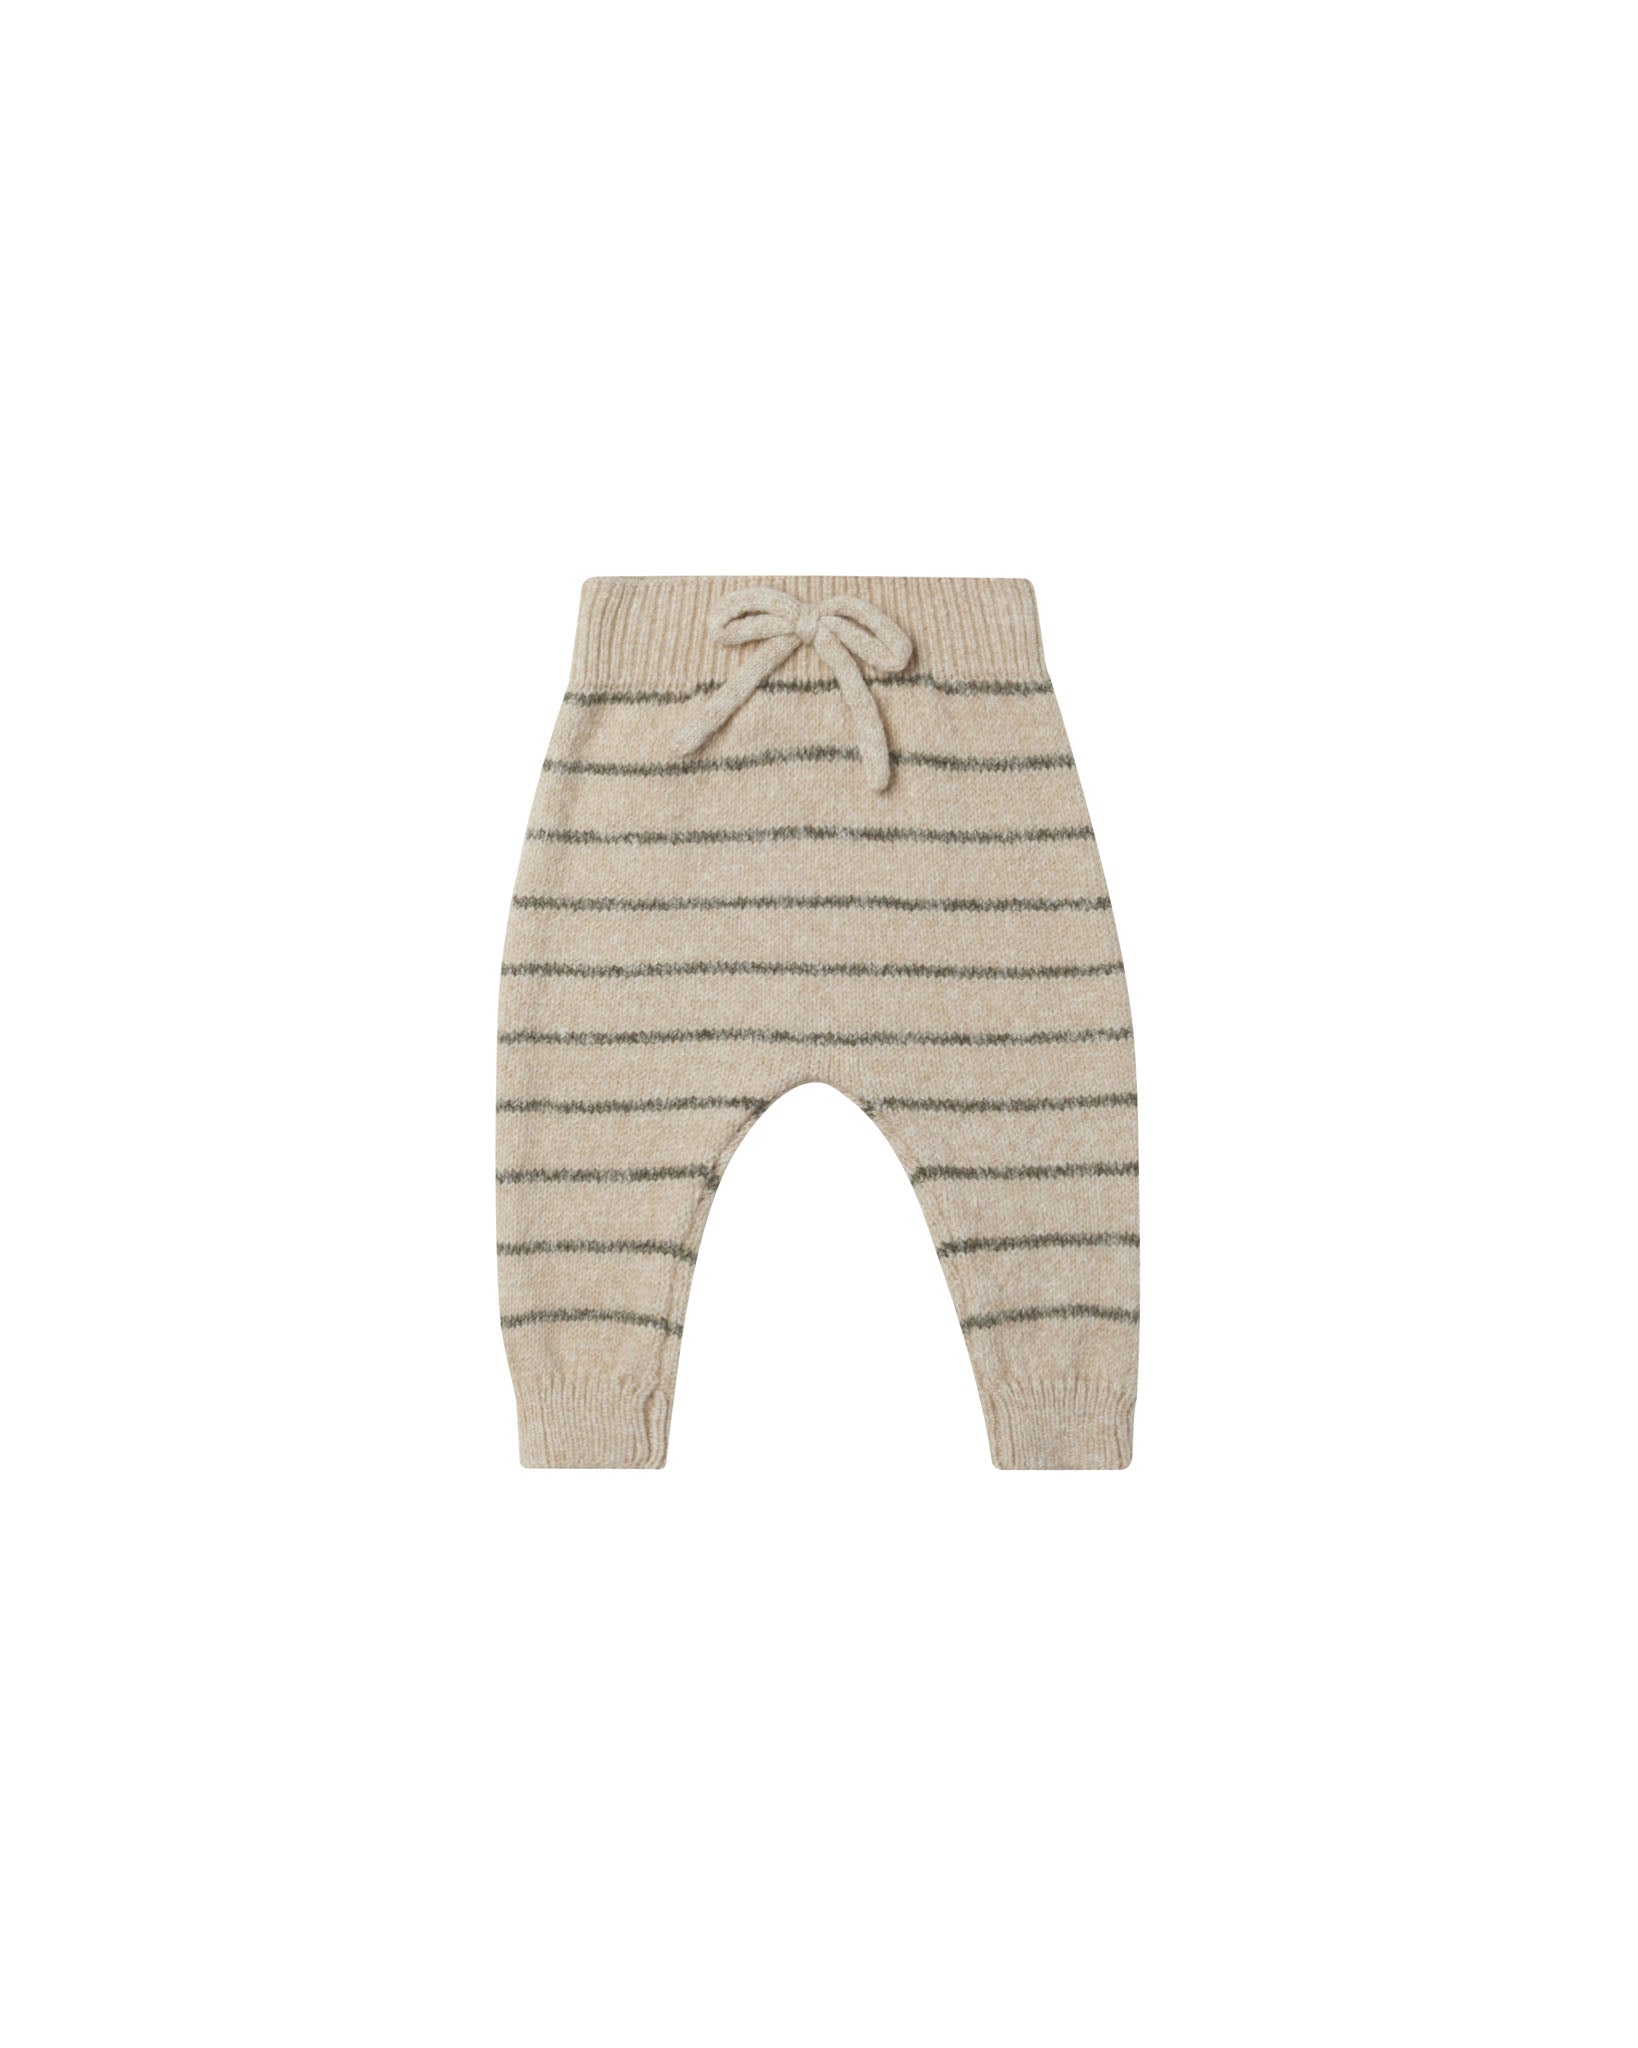 Basil Stripe Ace Knit Sweater & Pant Set - Twinkle Twinkle Little One